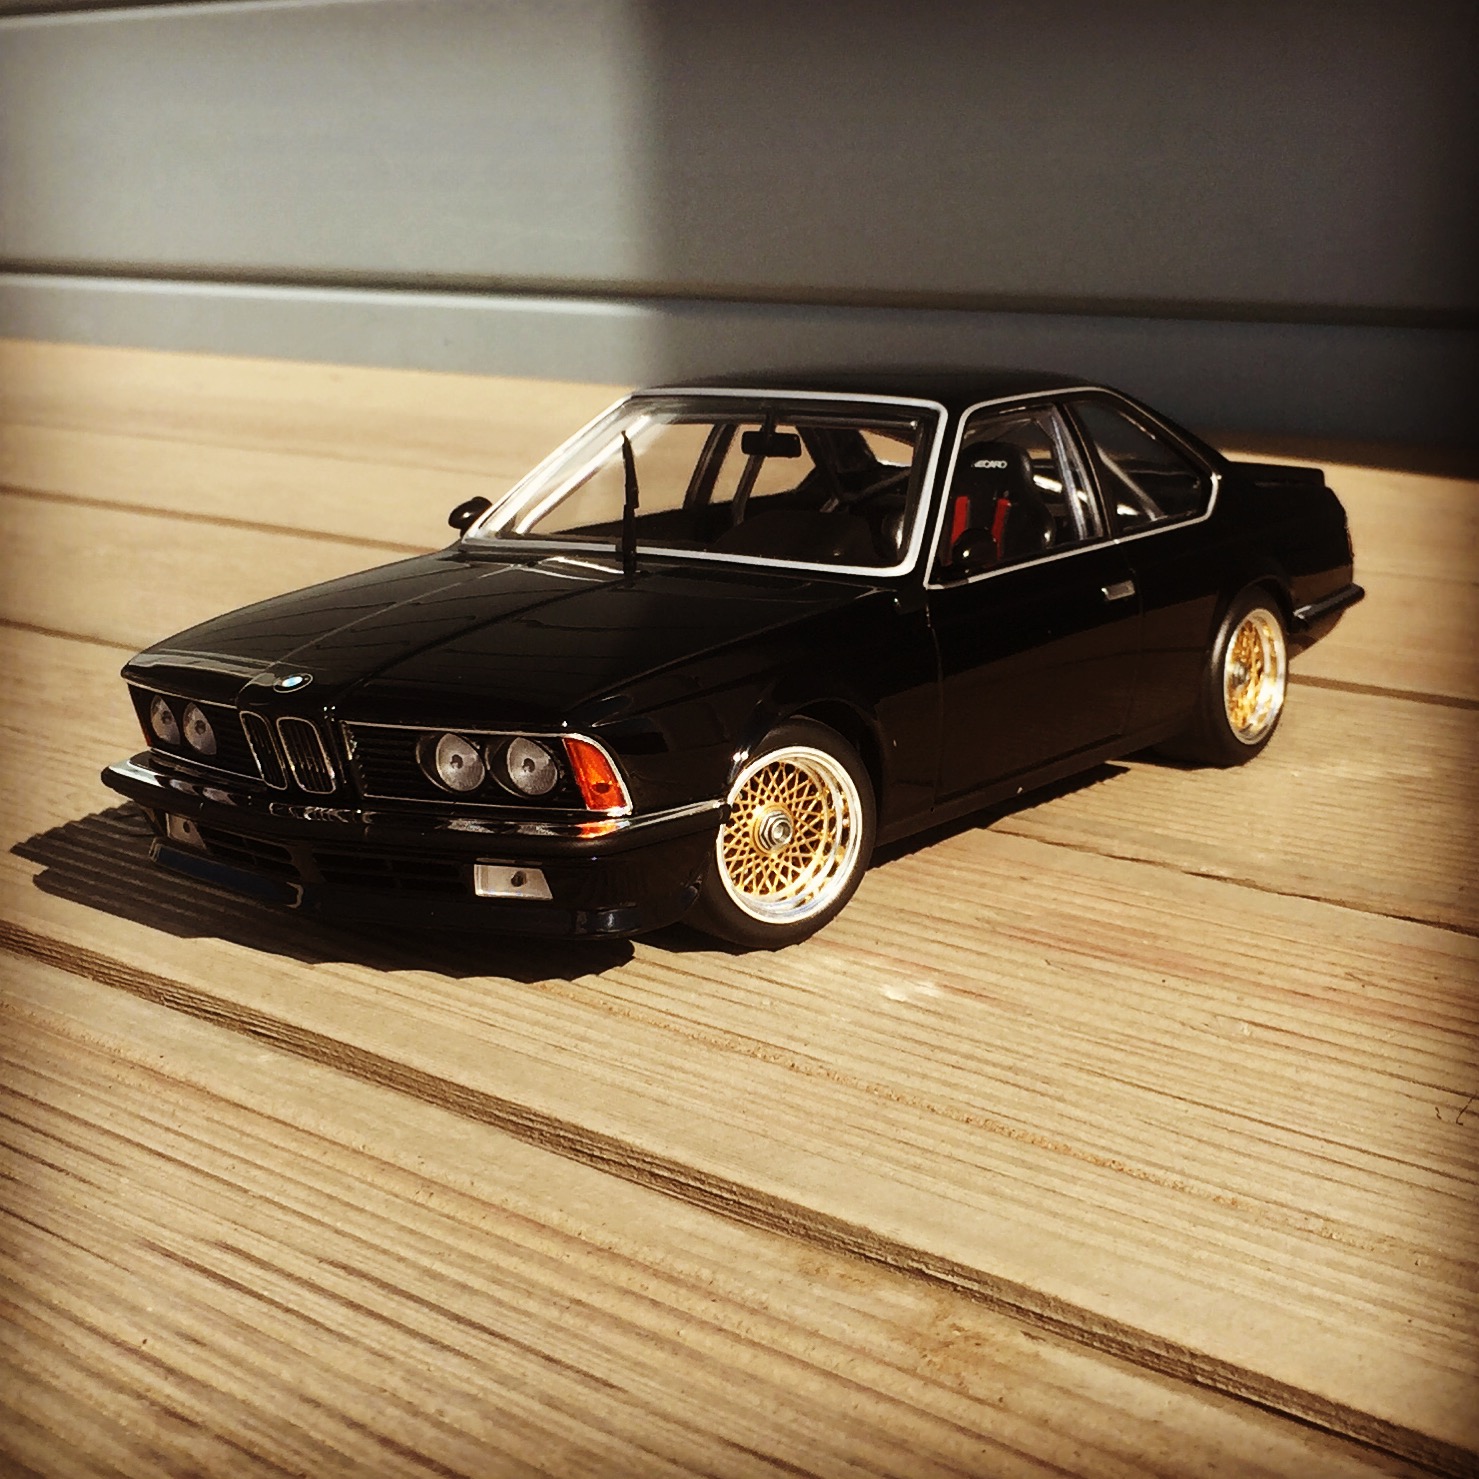 BMW 635 CSi (E24) DTM/ETCC 1983, black, le 1 of 504pcs. (minichamps)